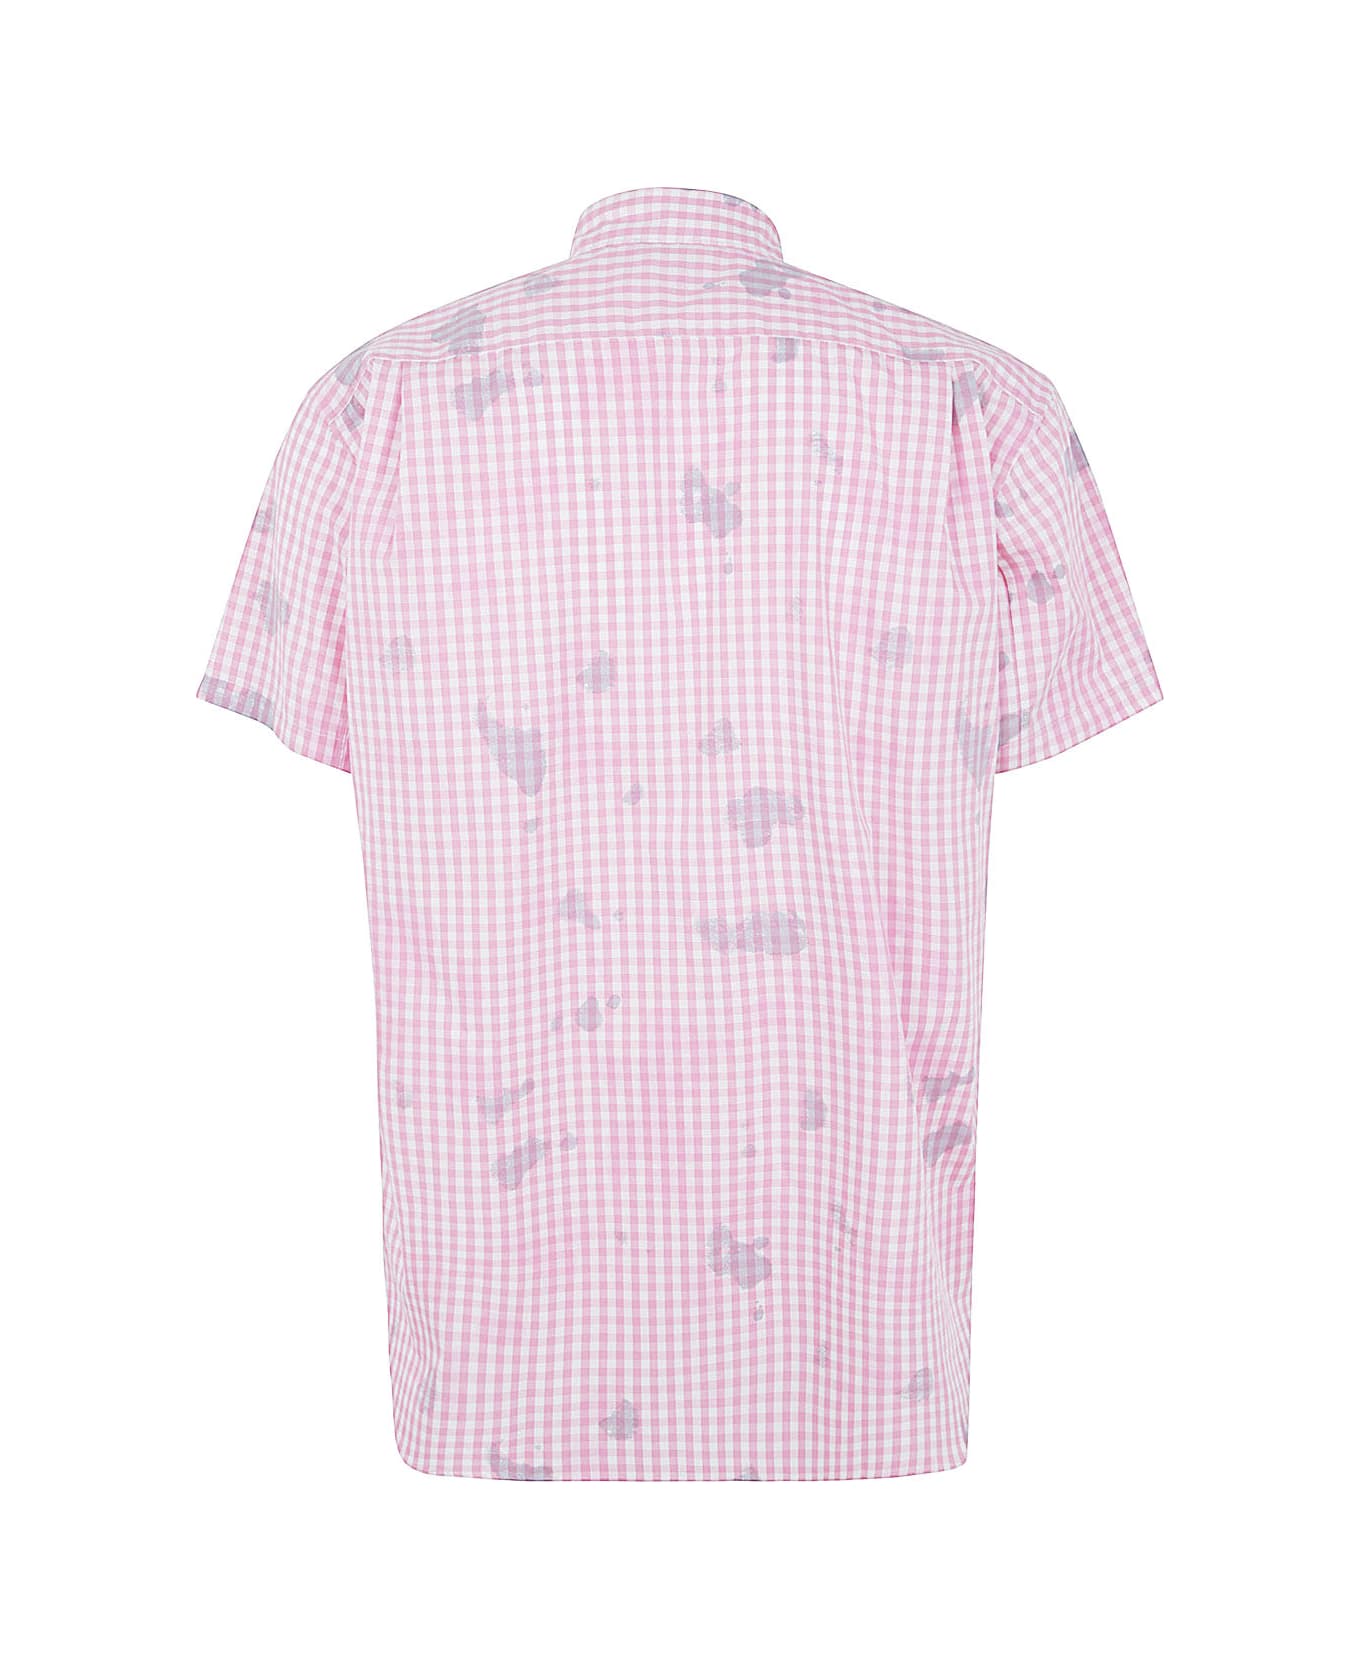 Comme des Garçons Shirt Mens Shirt Woven - Pink Check